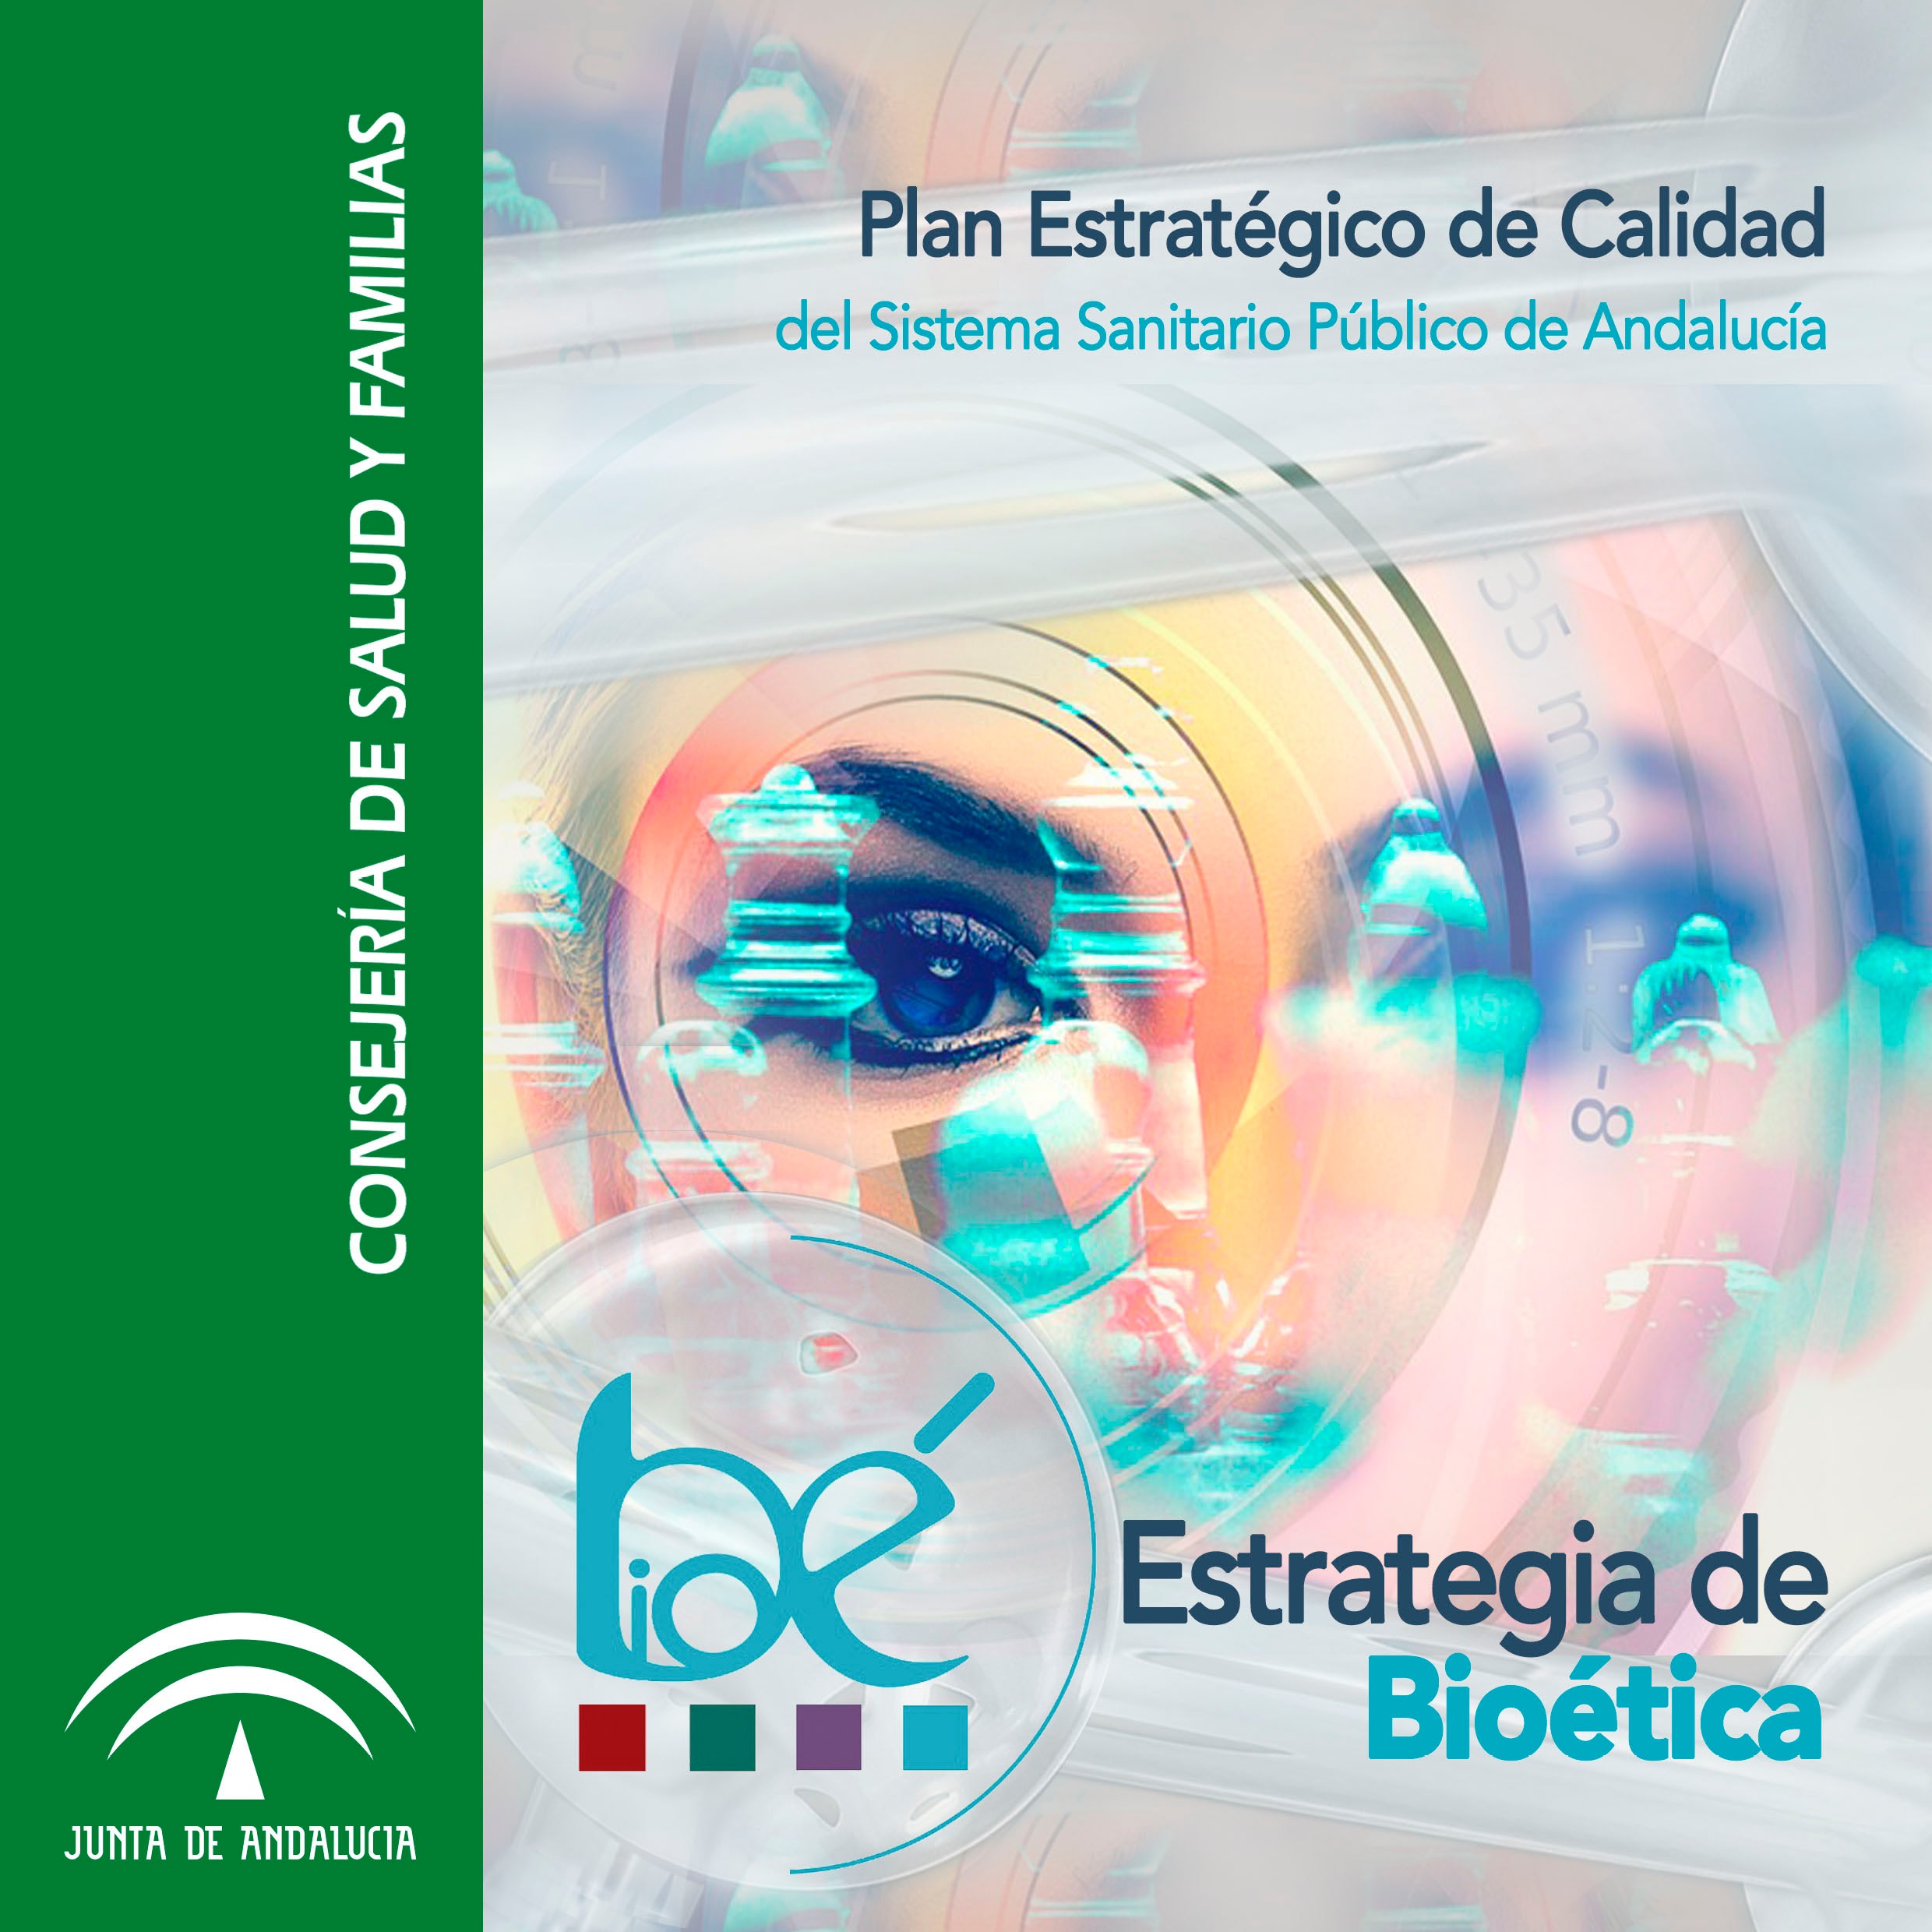 Estrategia de Bioética del Sistema Sanitario Público de Andalucía